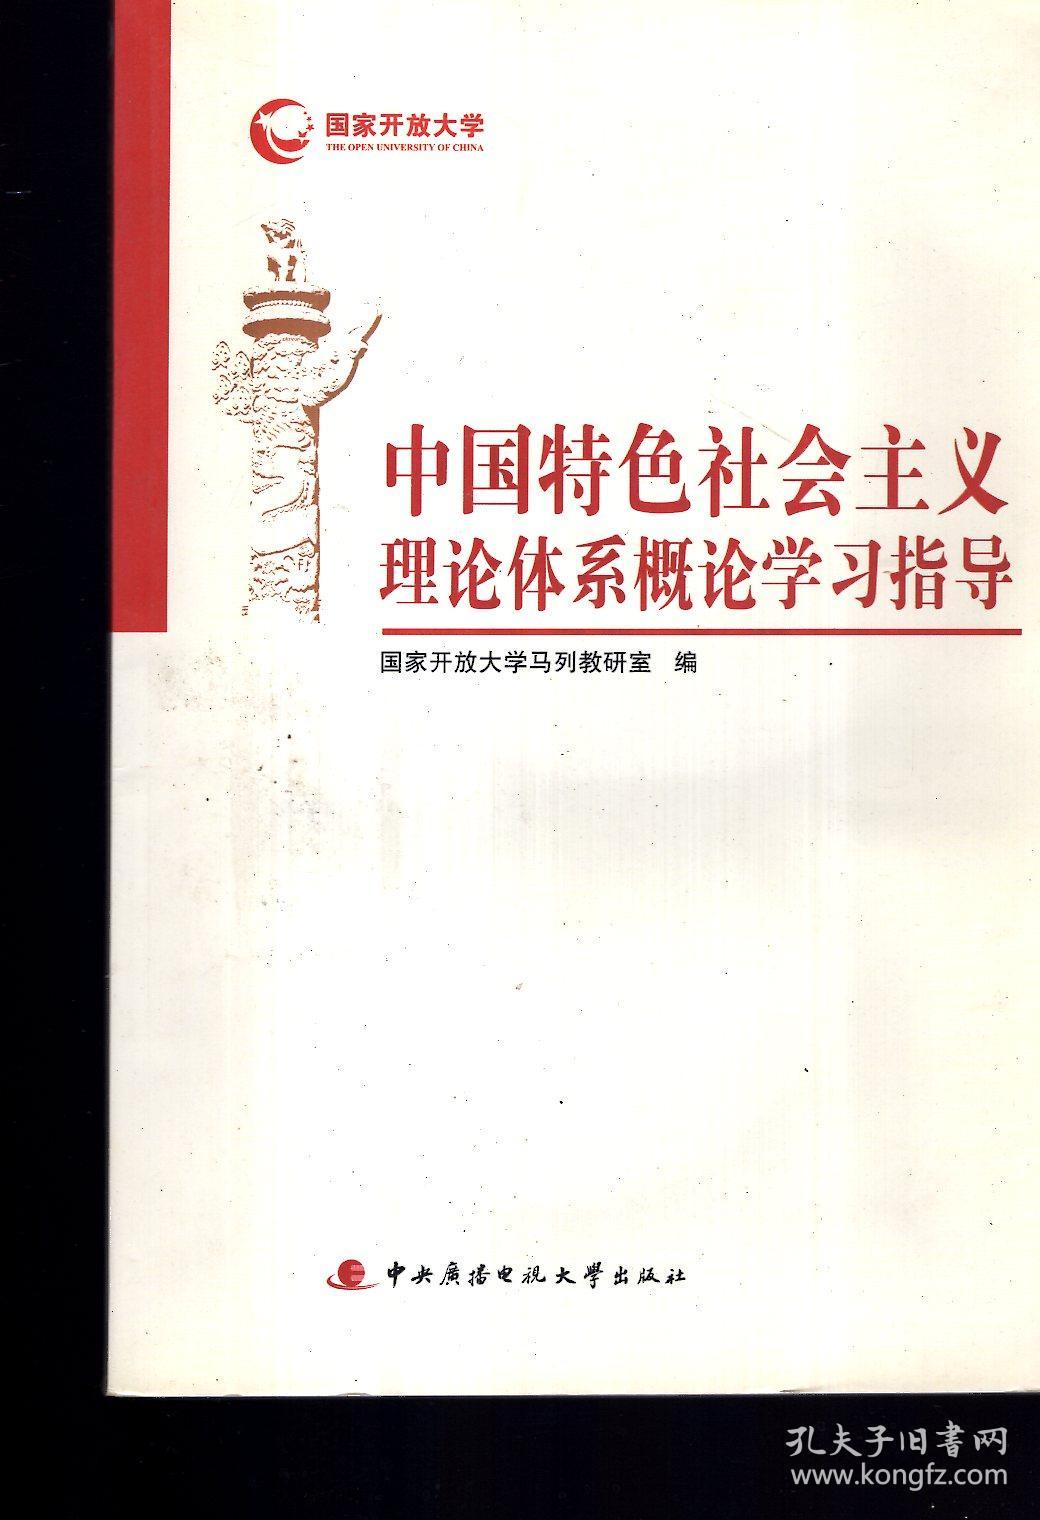 国家开放大学:中国特色社会主义理论体系概论